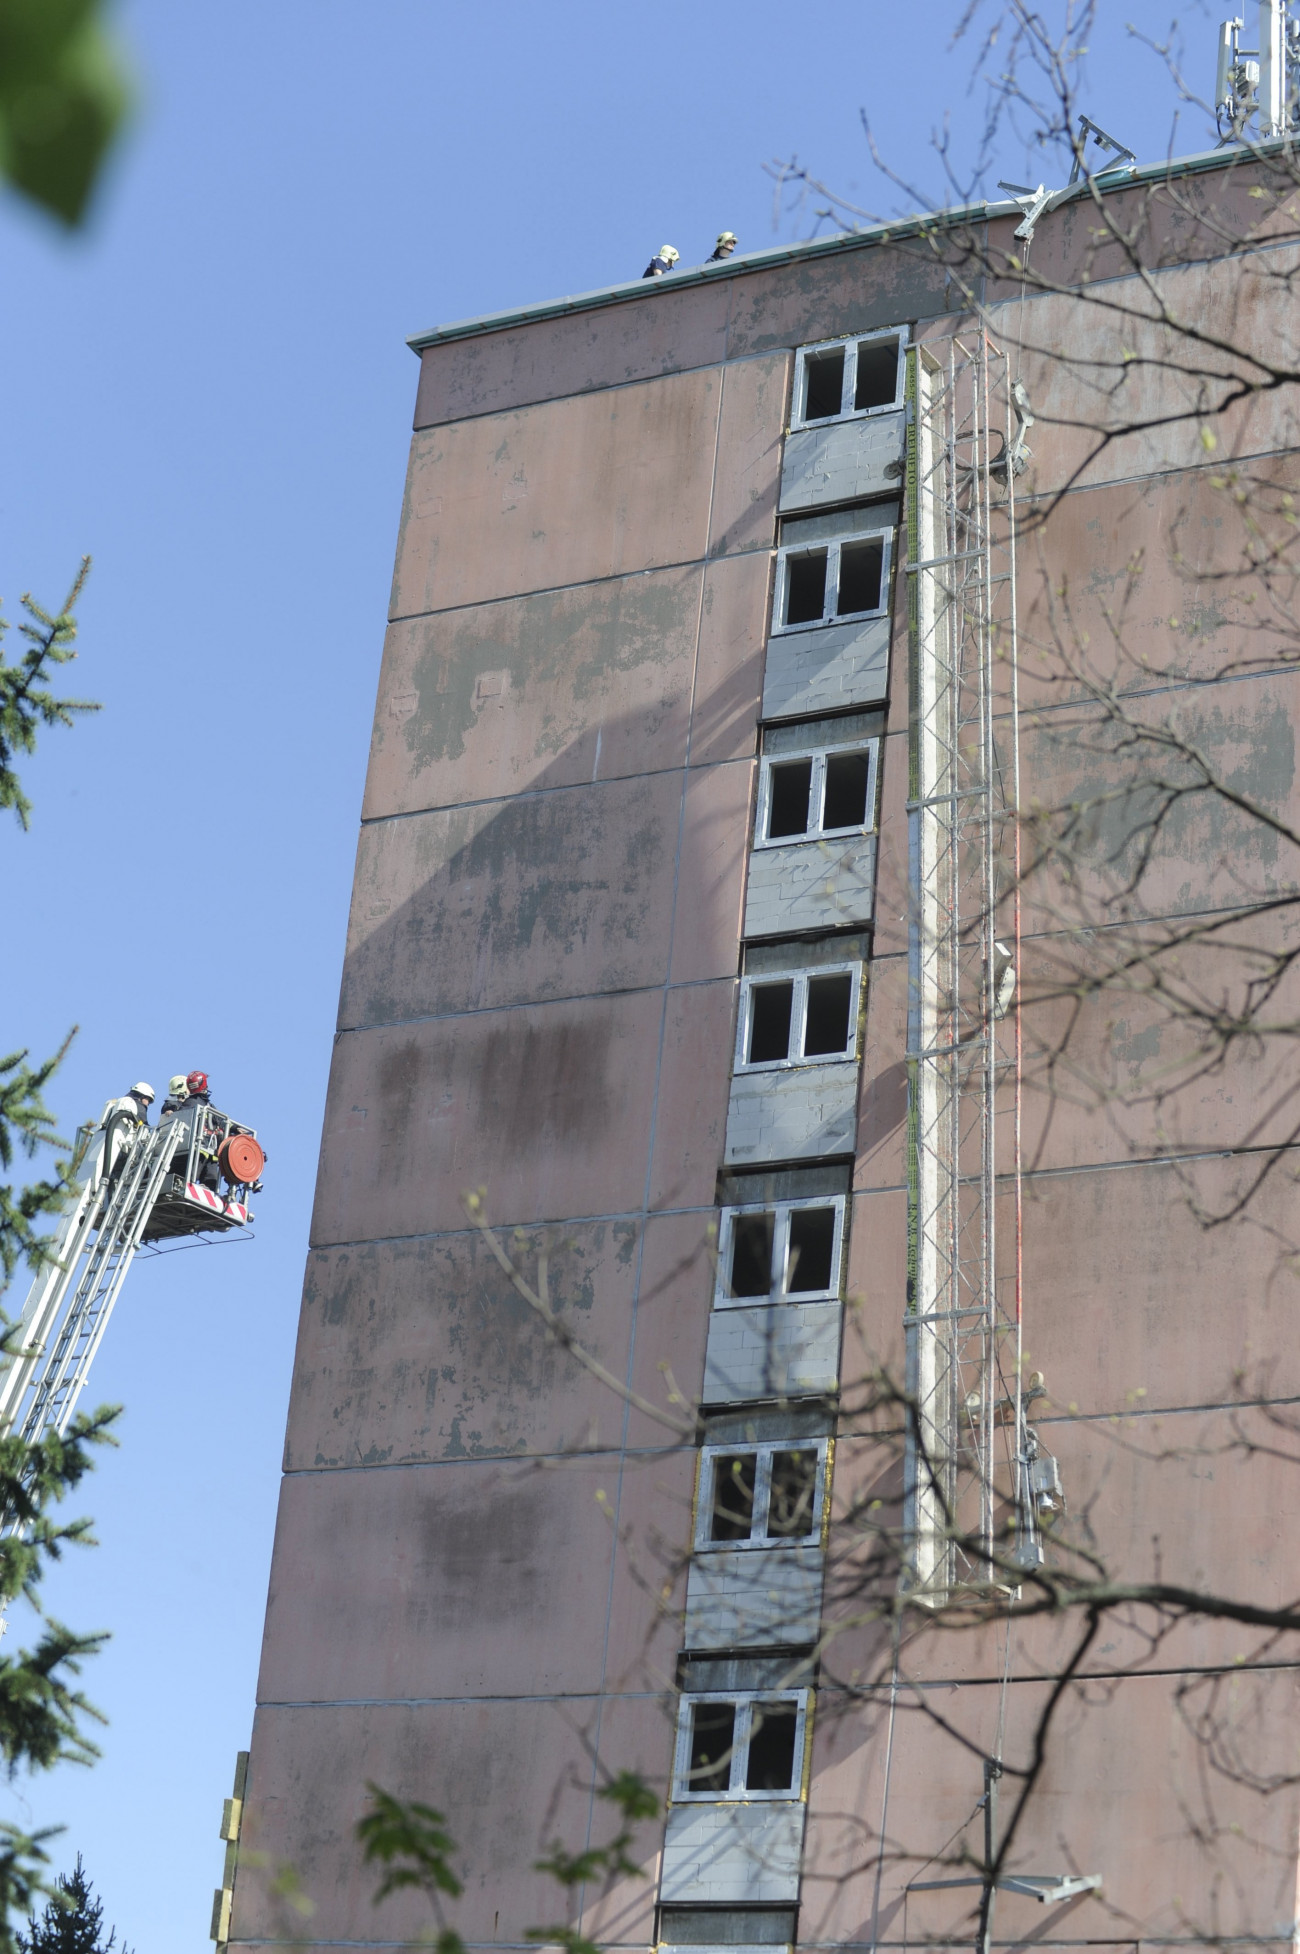 Budapest, 2018. április 19.
Leszakadt állvány egy falújítás alatt álló Nagytétényi úti épületen 2018. április 19-én. Az állványról két munkás leesett, a balesetben mindketten életüket vesztették.
MTI Fotó: Mihádák Zoltán